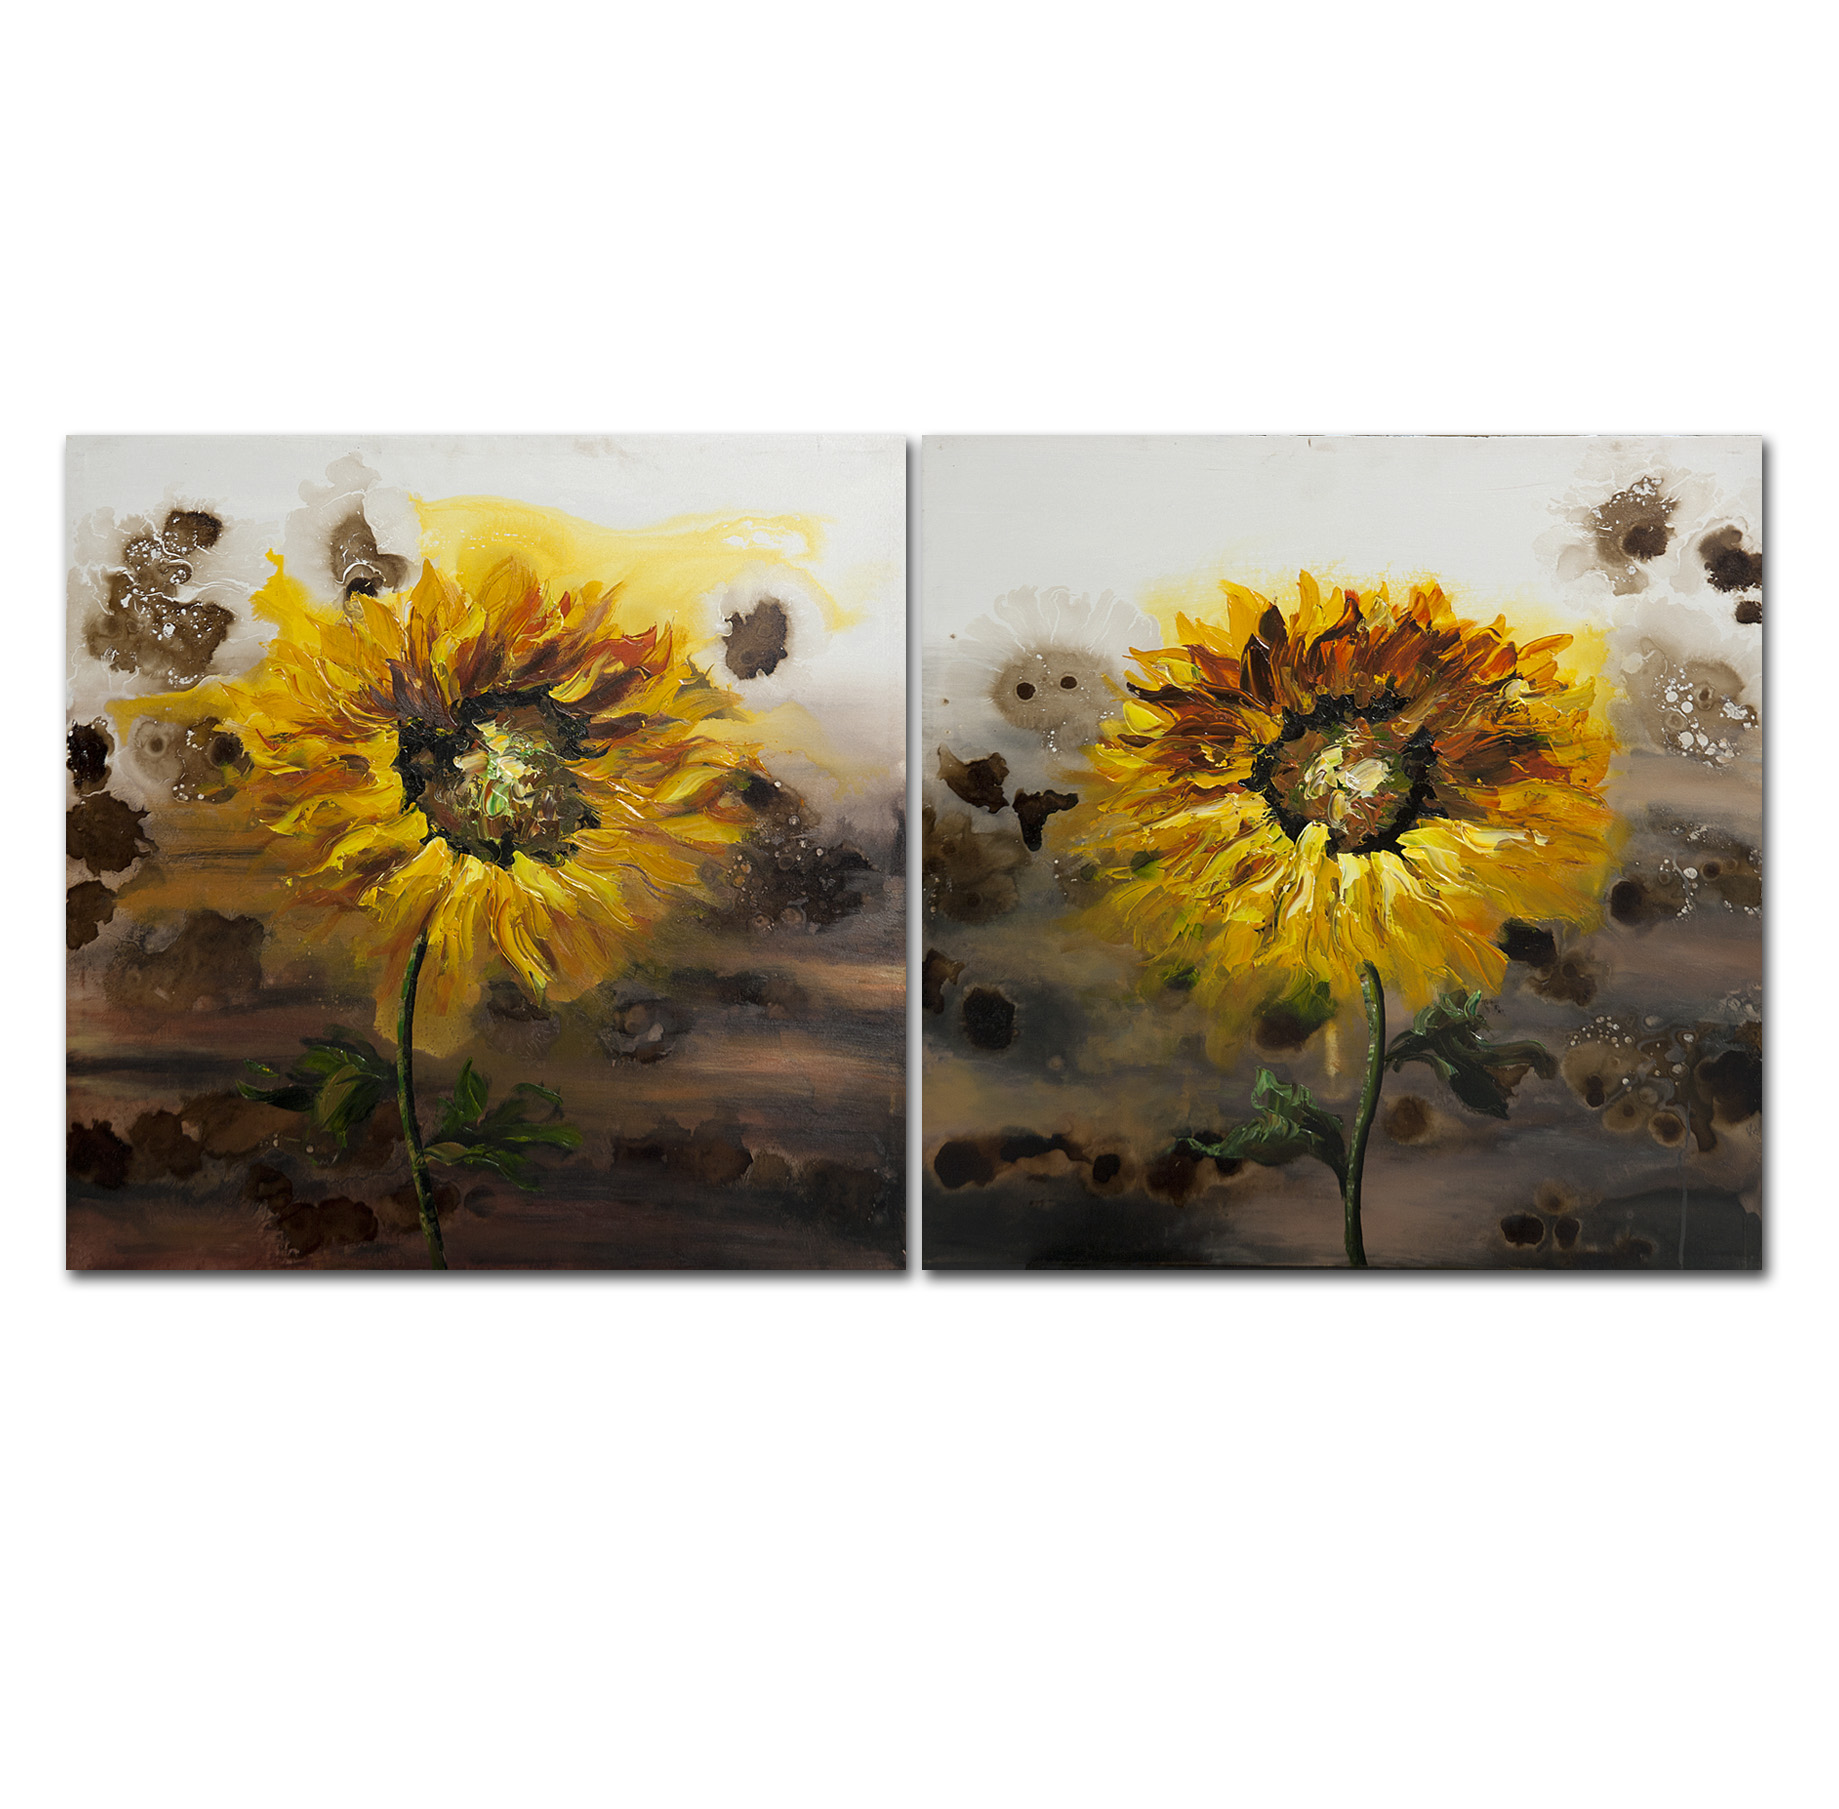 Sonnenblumen - Ölbild auf Leinwand 80 x 80 cm (nur im 2er-Set lieferbar)